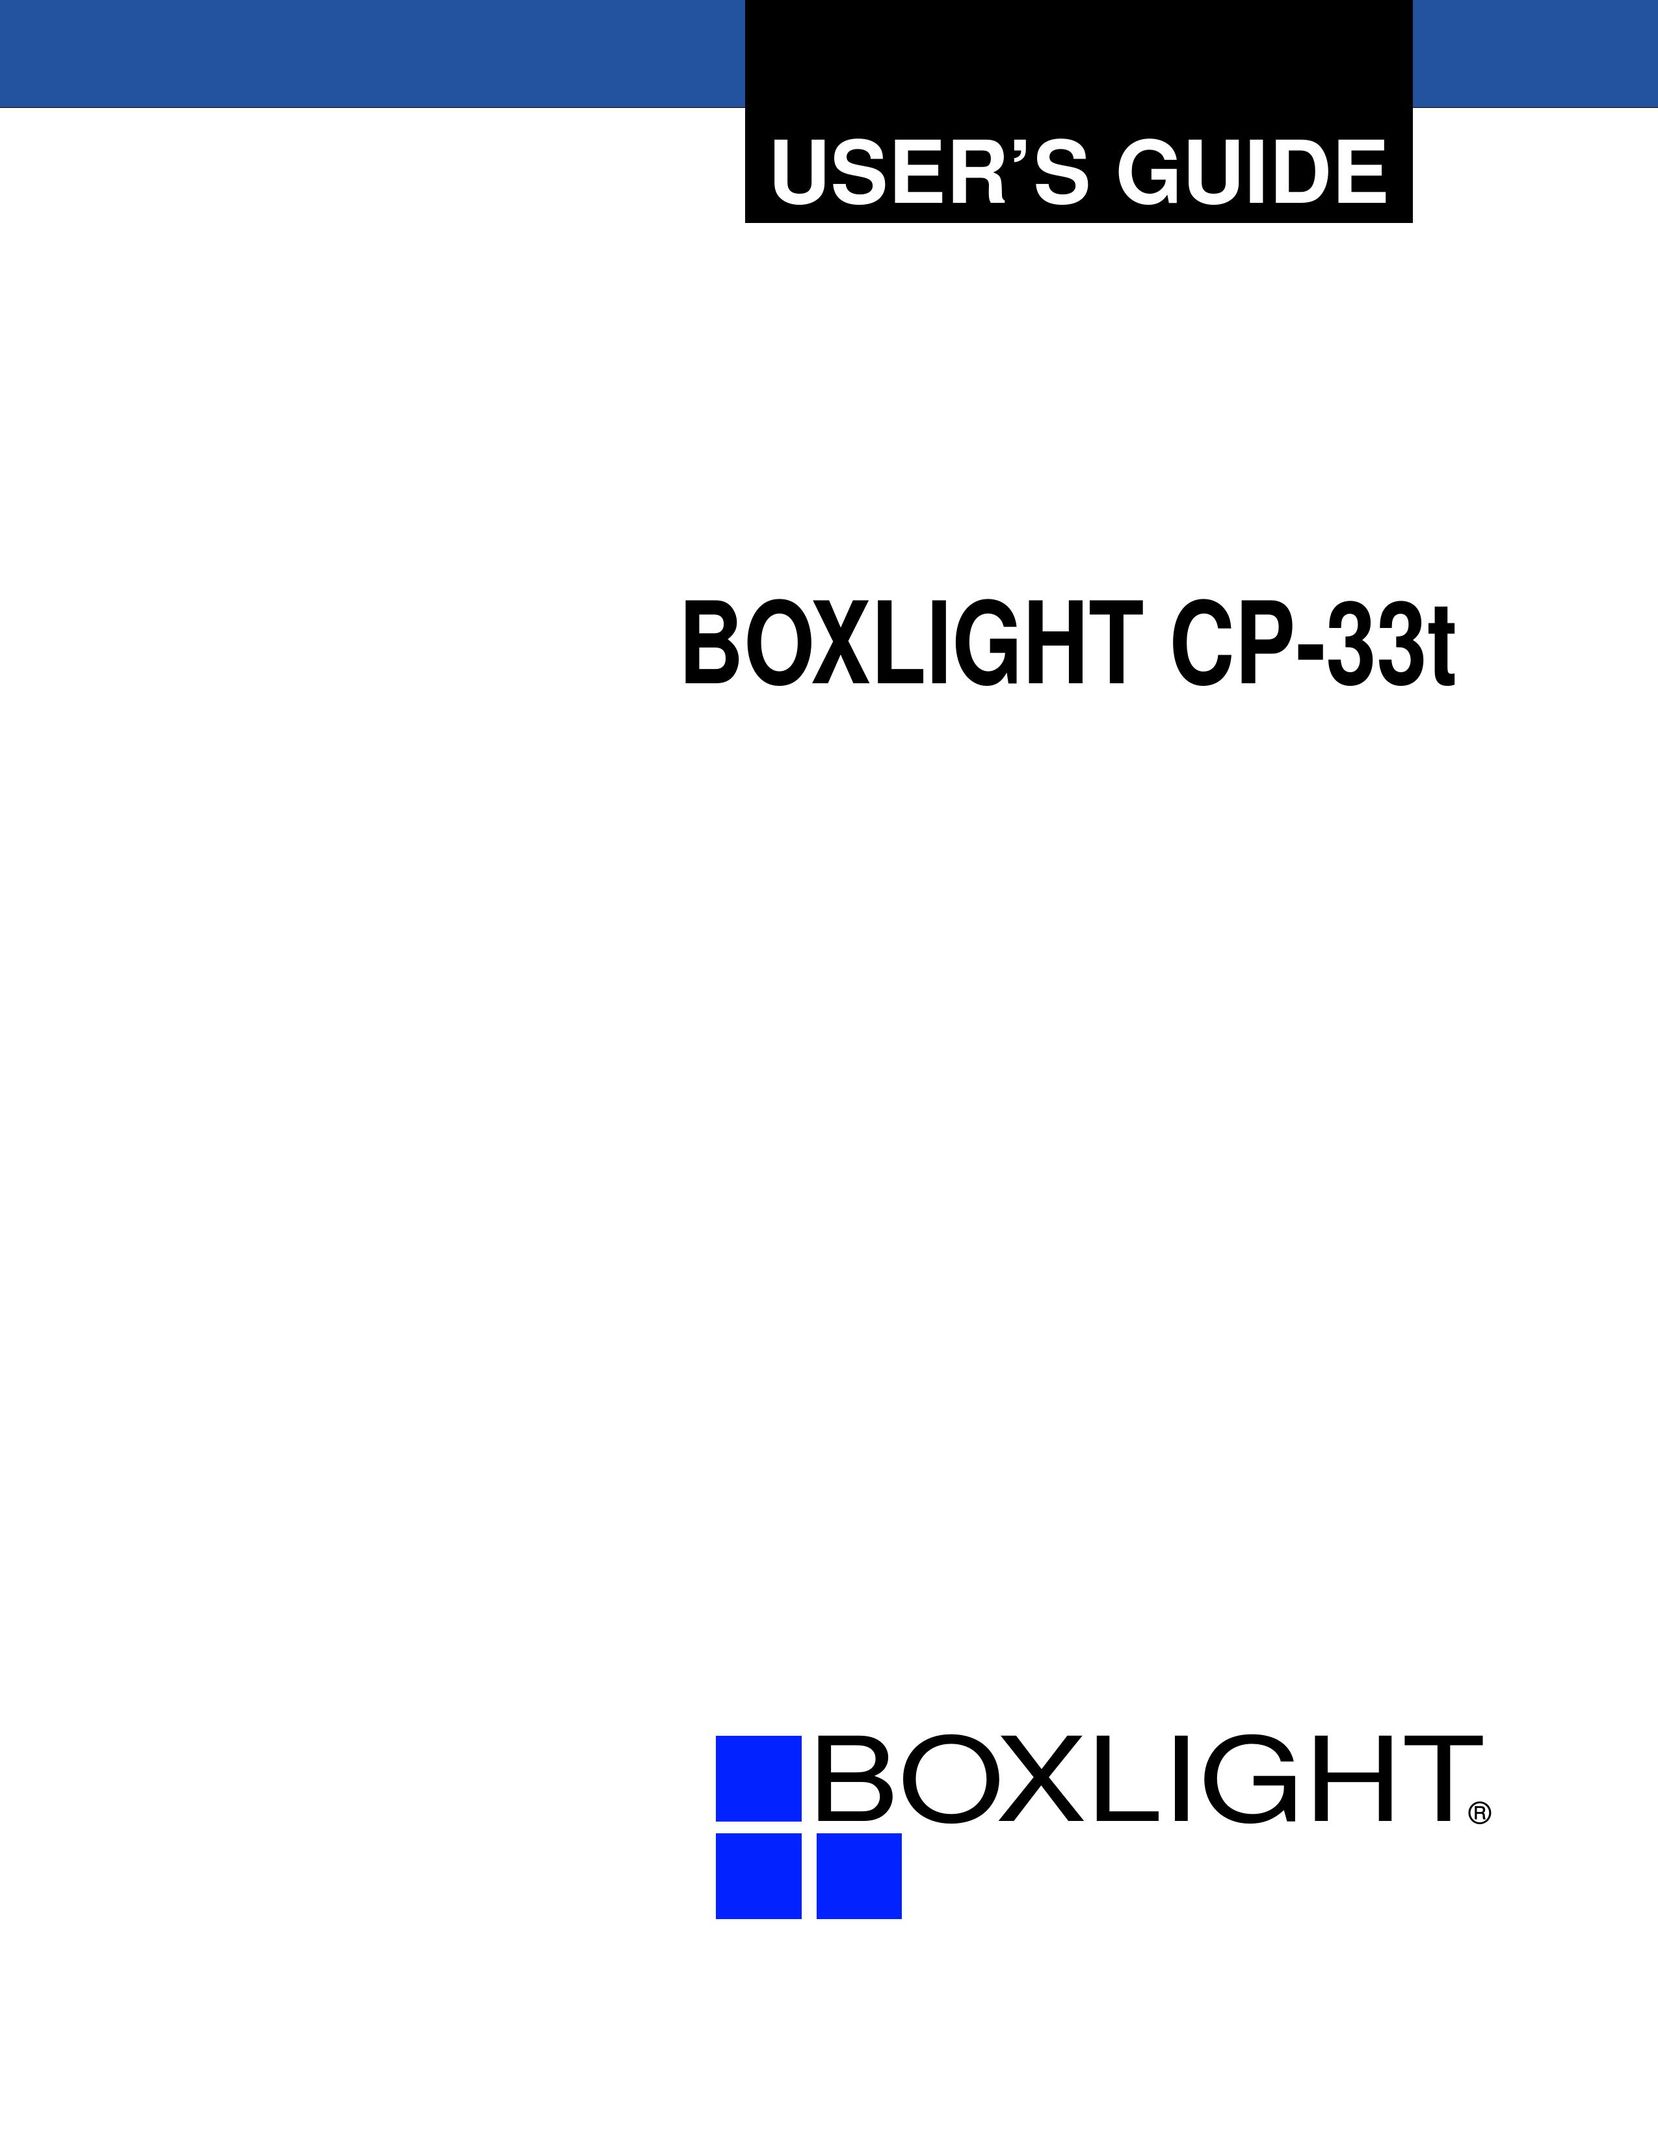 BOXLIGHT CP-33t Projector User Manual